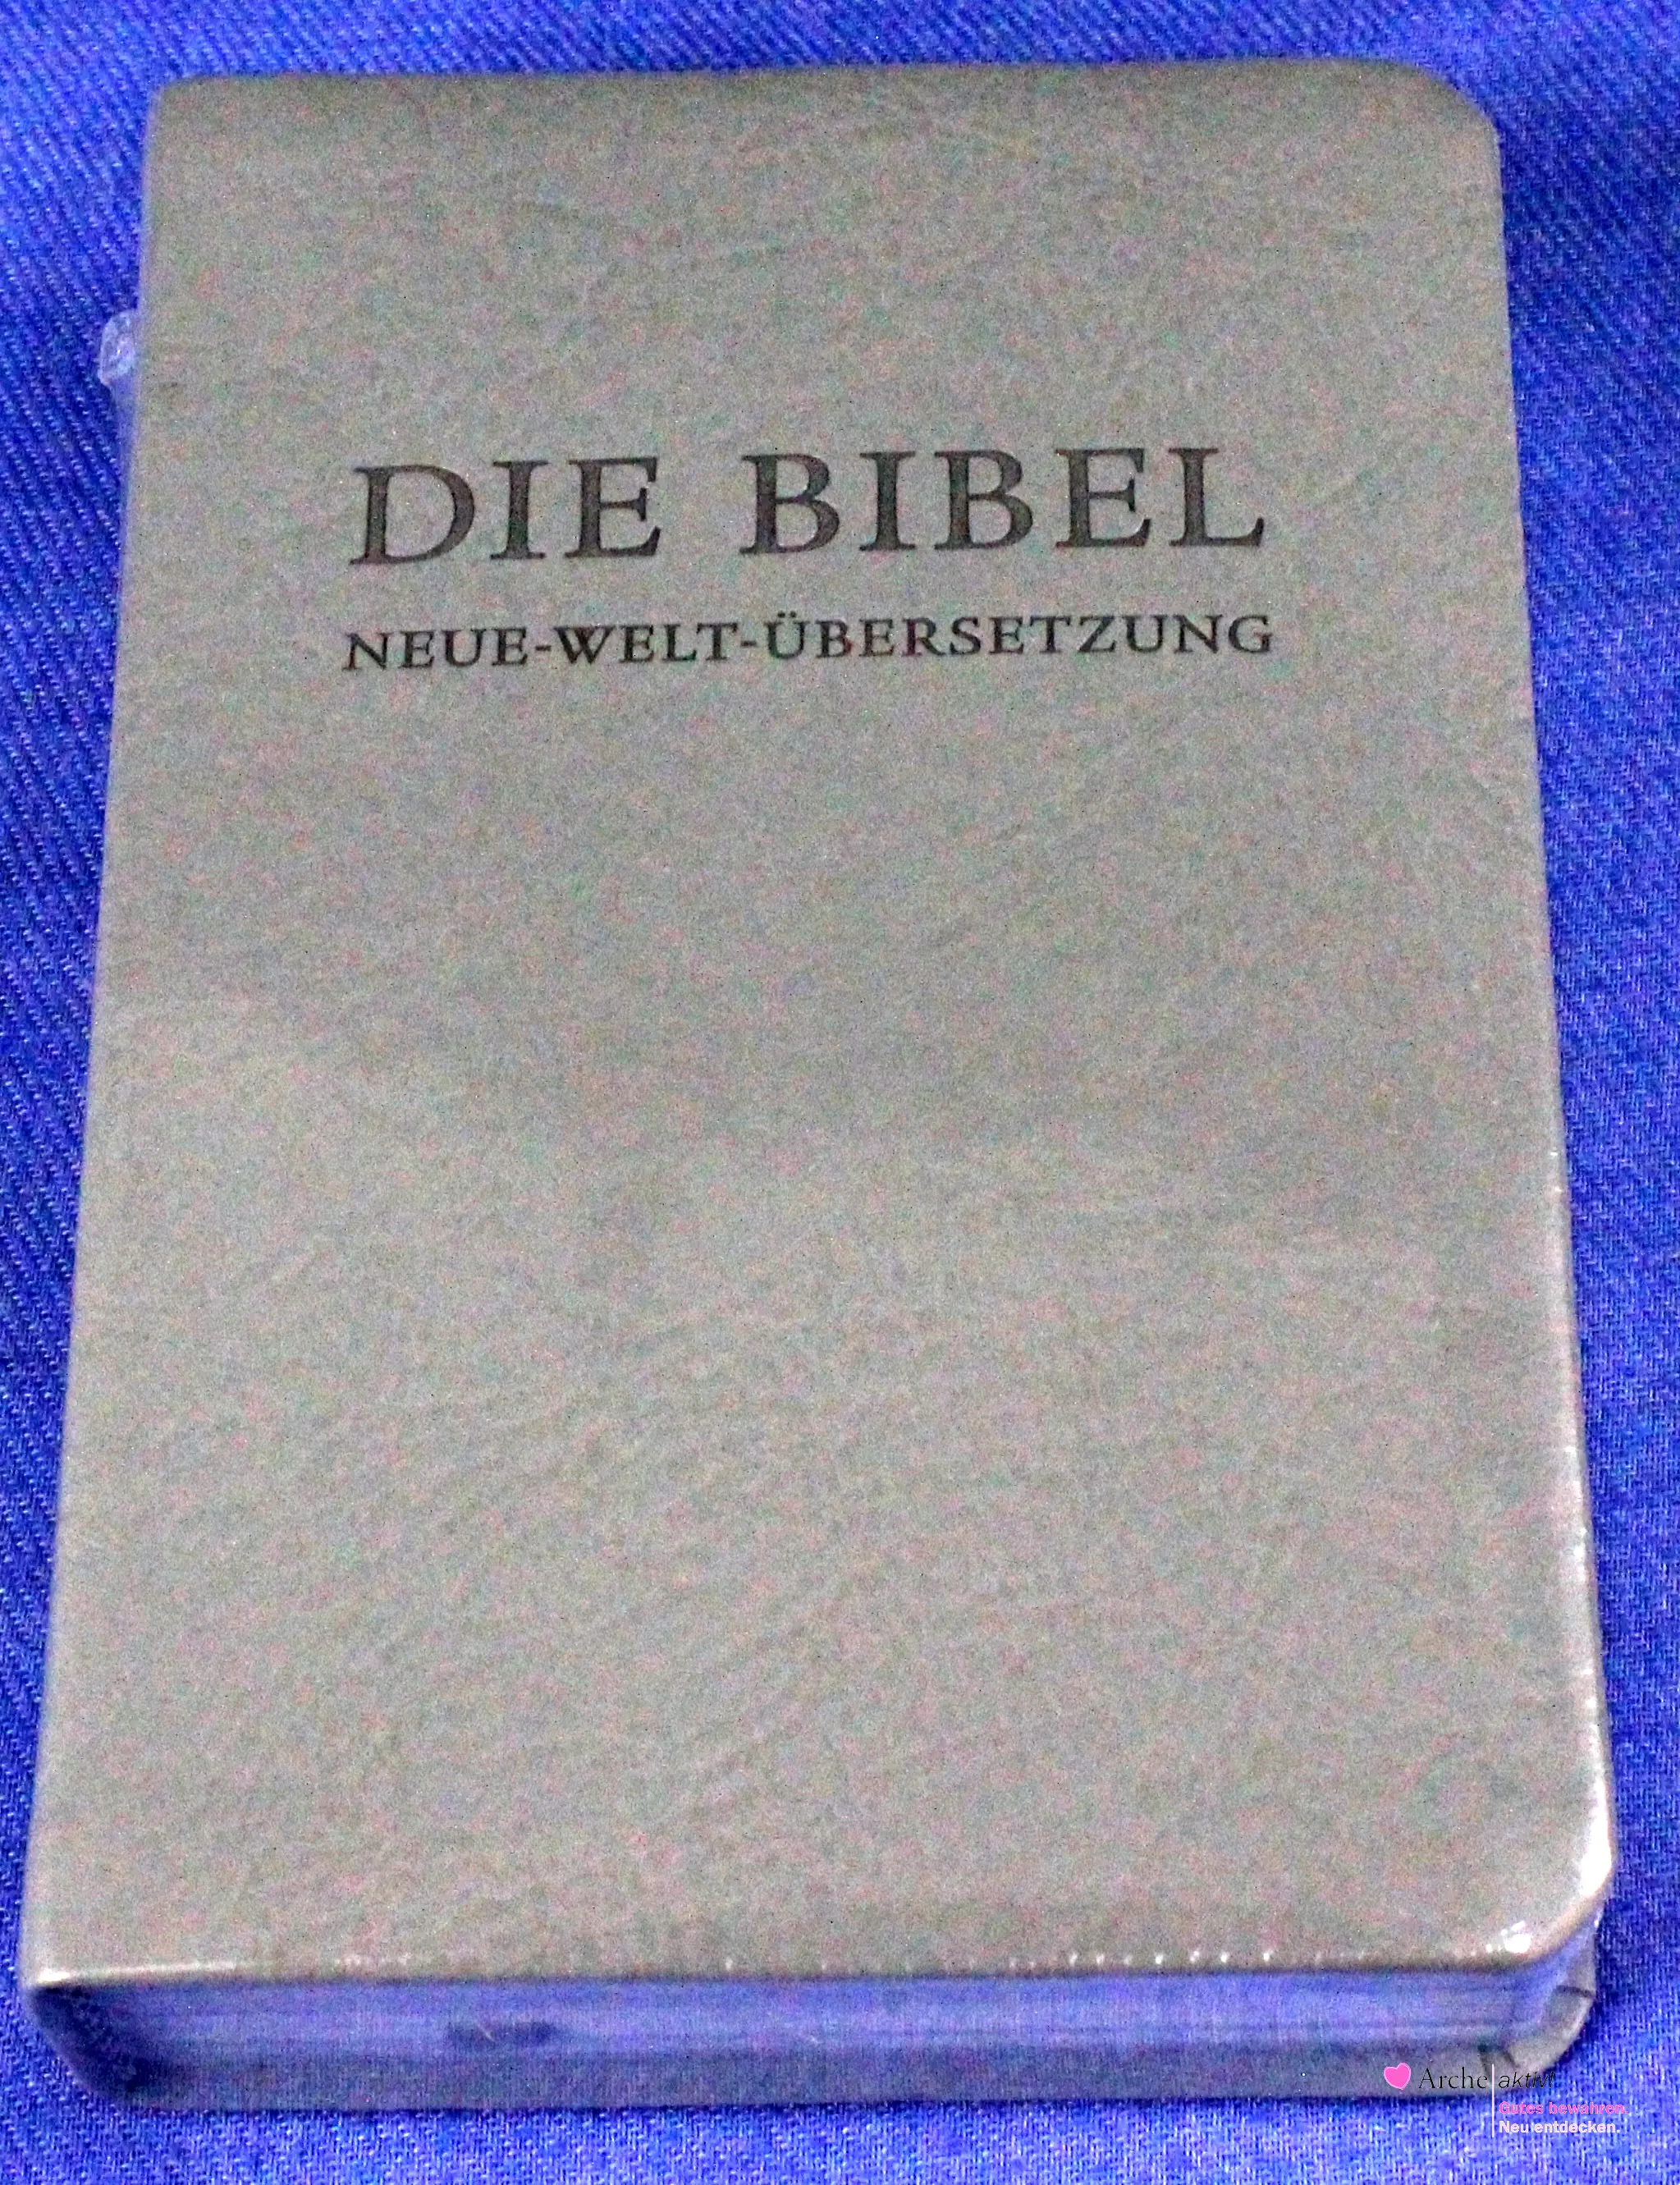 Die Bibel - Neue-Welt-Übersetzung, Neu in OVP